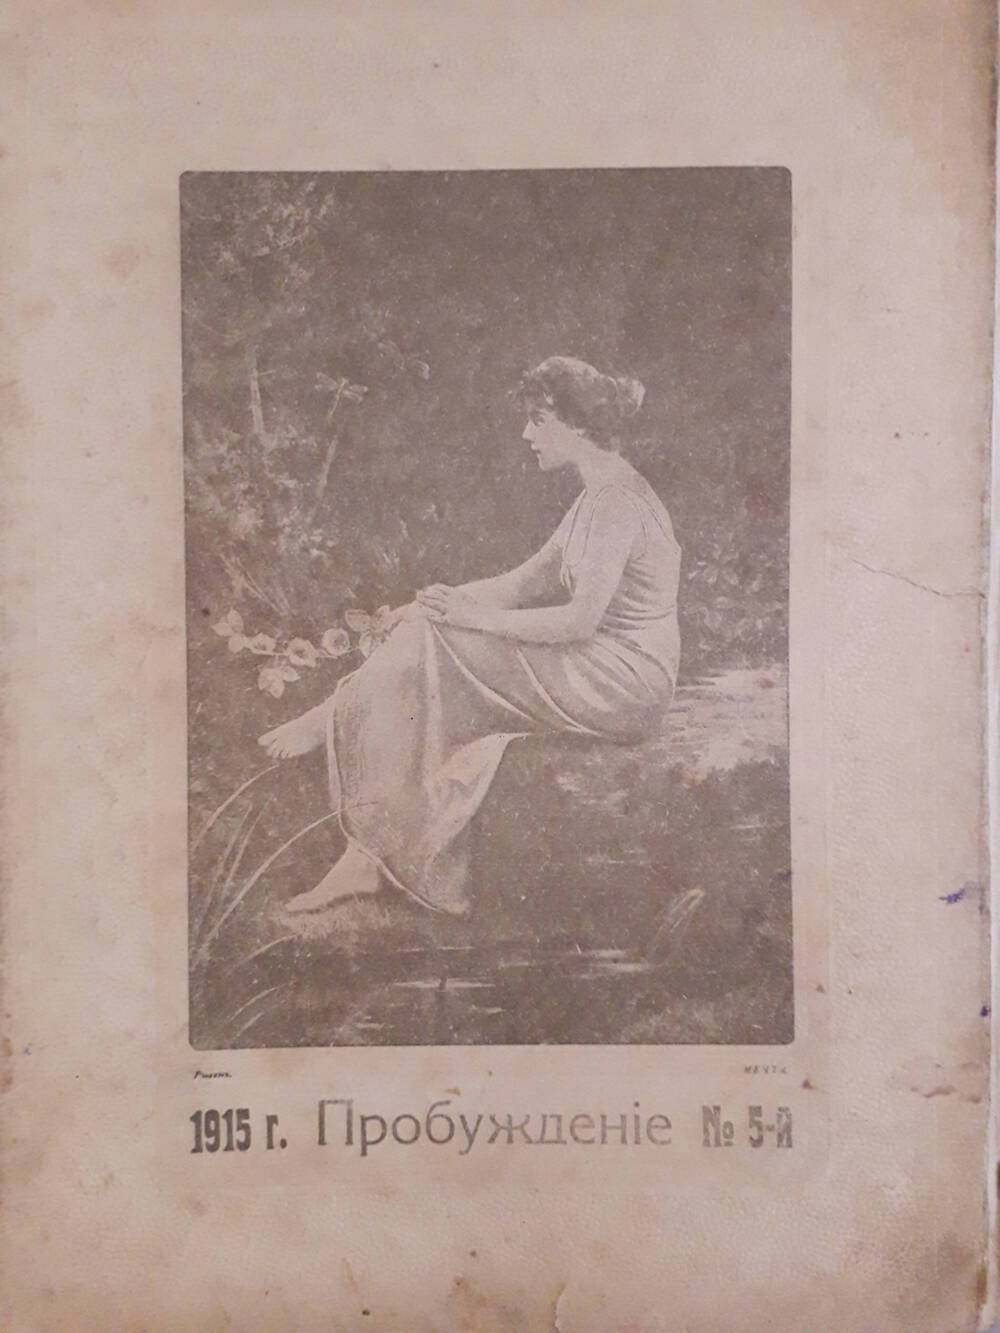 Художественно-литературный журнал с картинками в красках Пробуждение №5 1915 г.